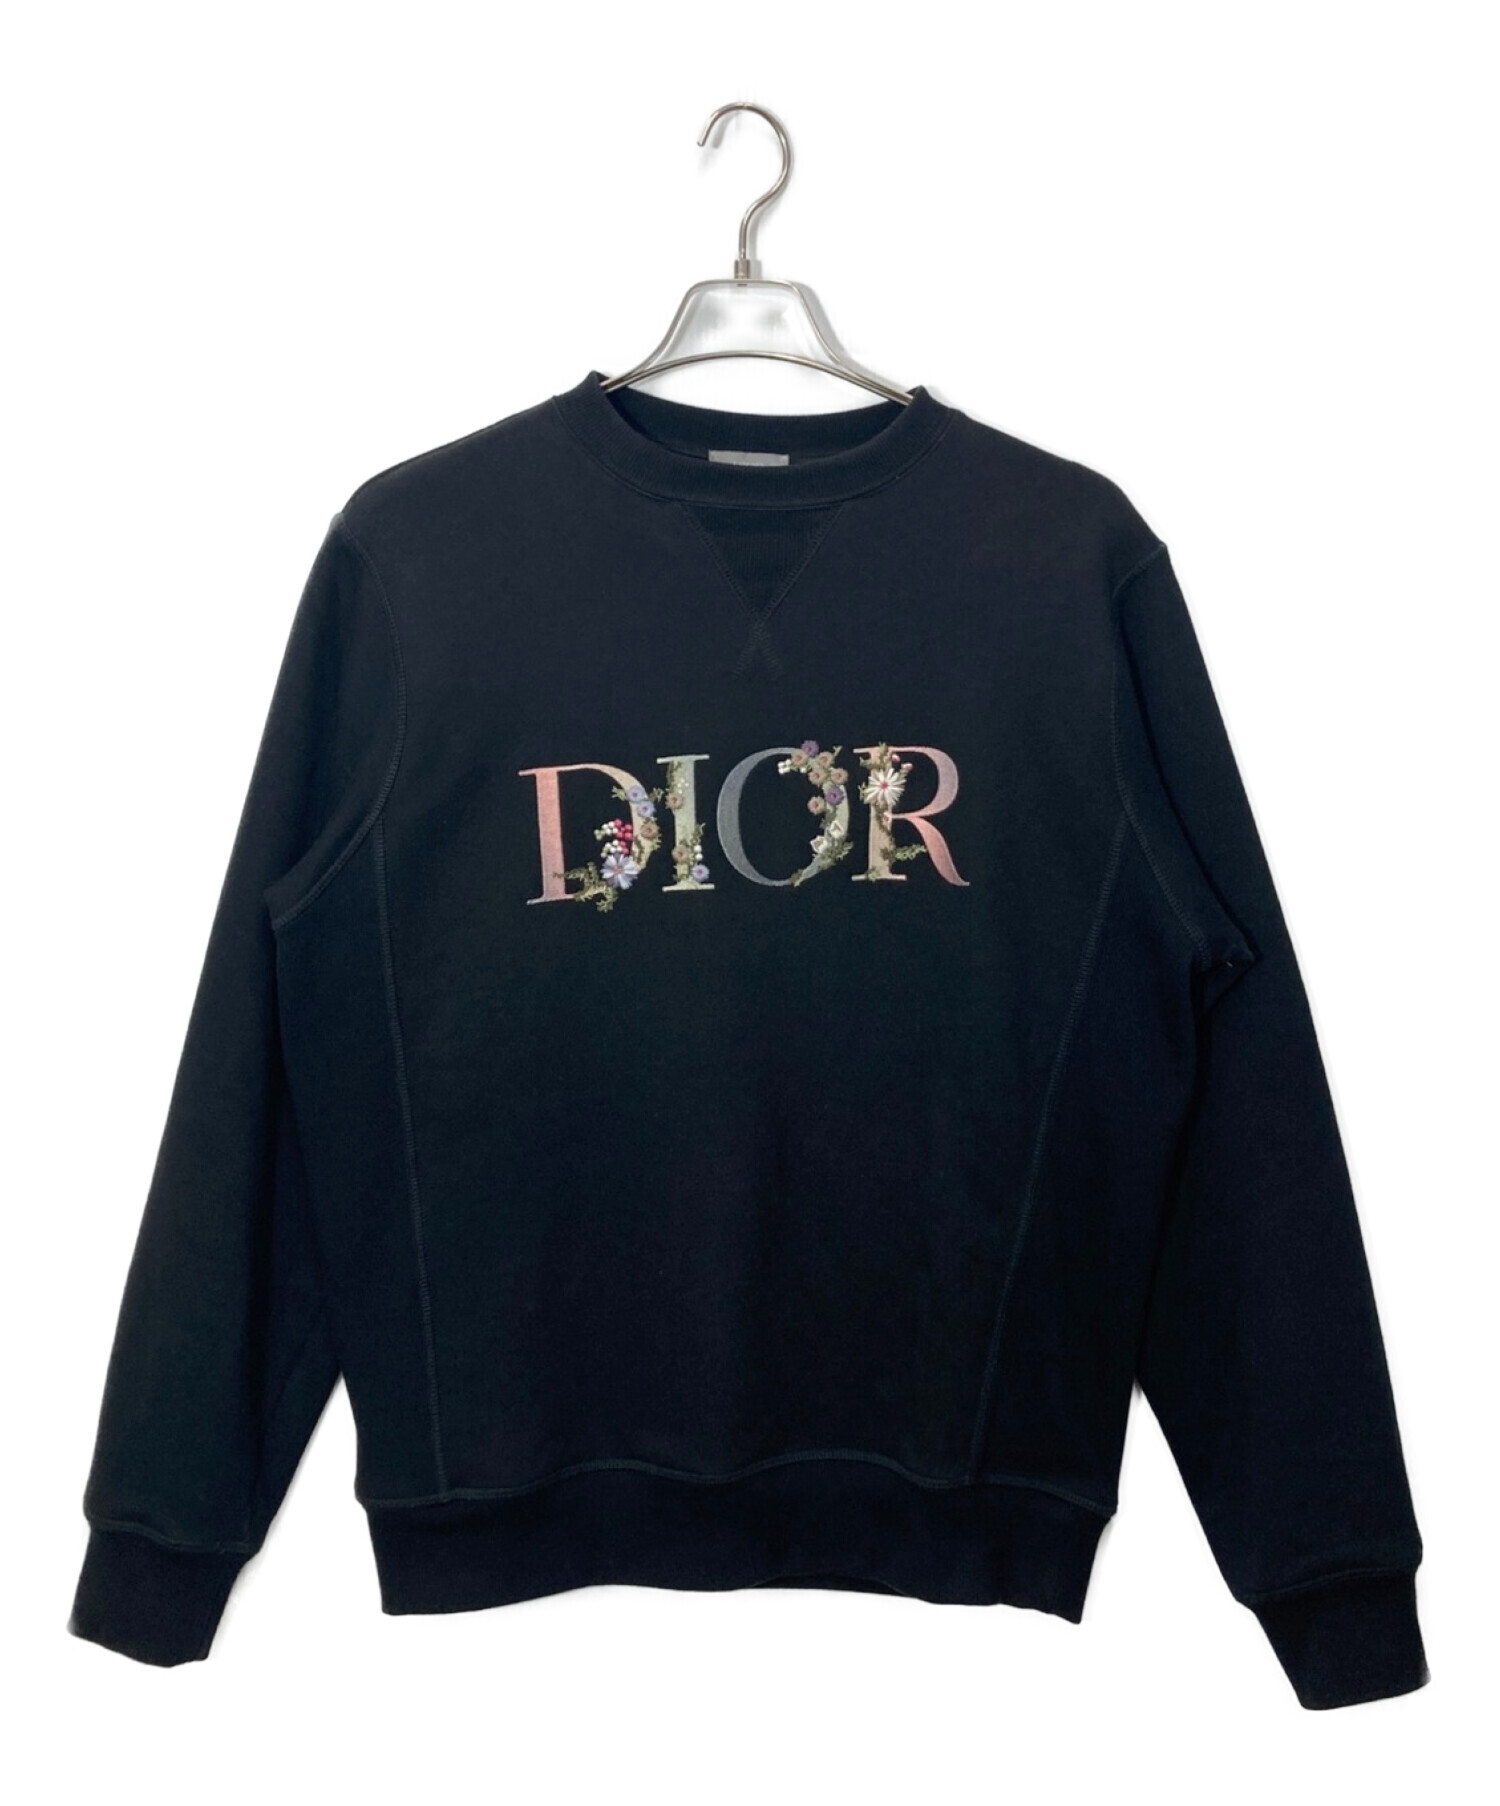 Dior (ディオール) フラワーロゴ刺繍スウェット ブラック サイズ:XS